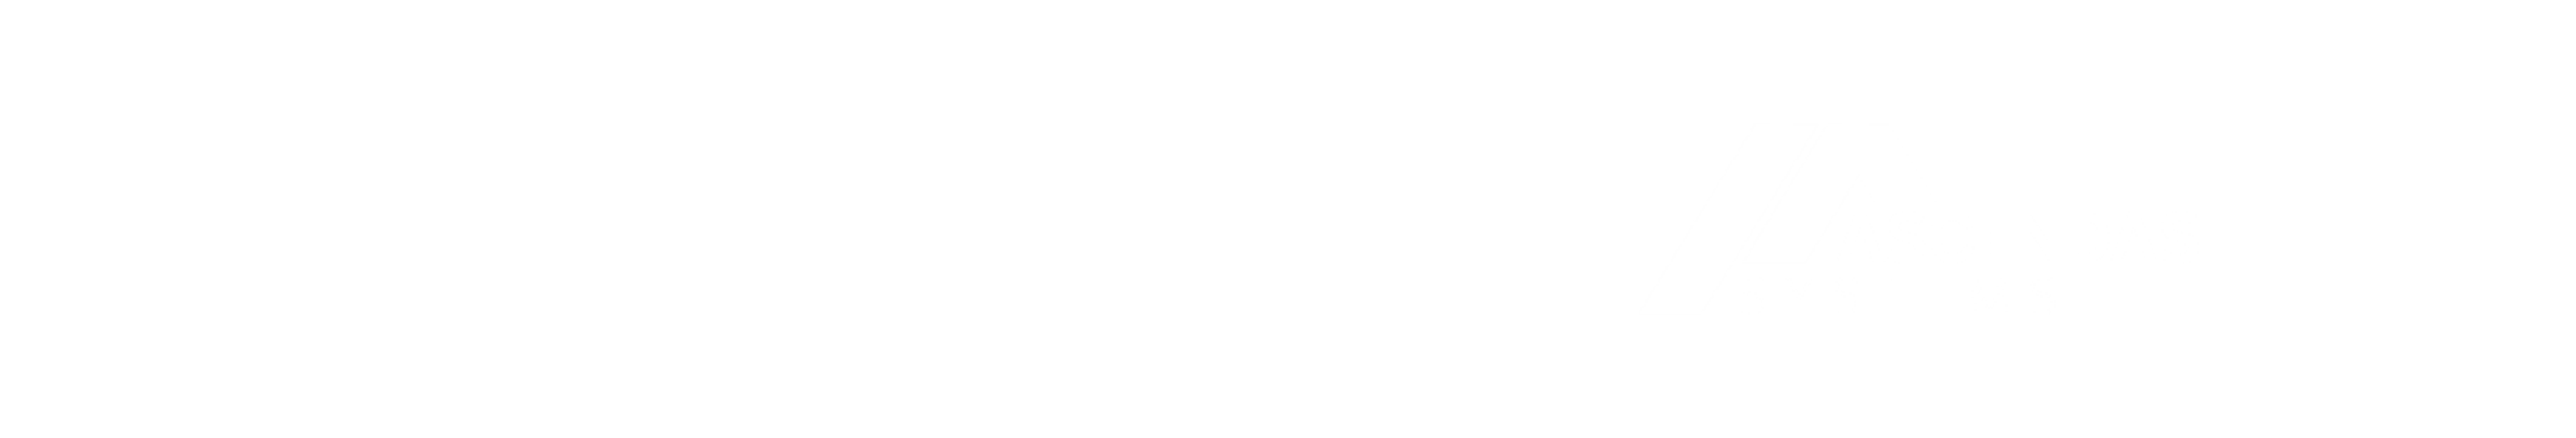 TechSource and Ascendas logos